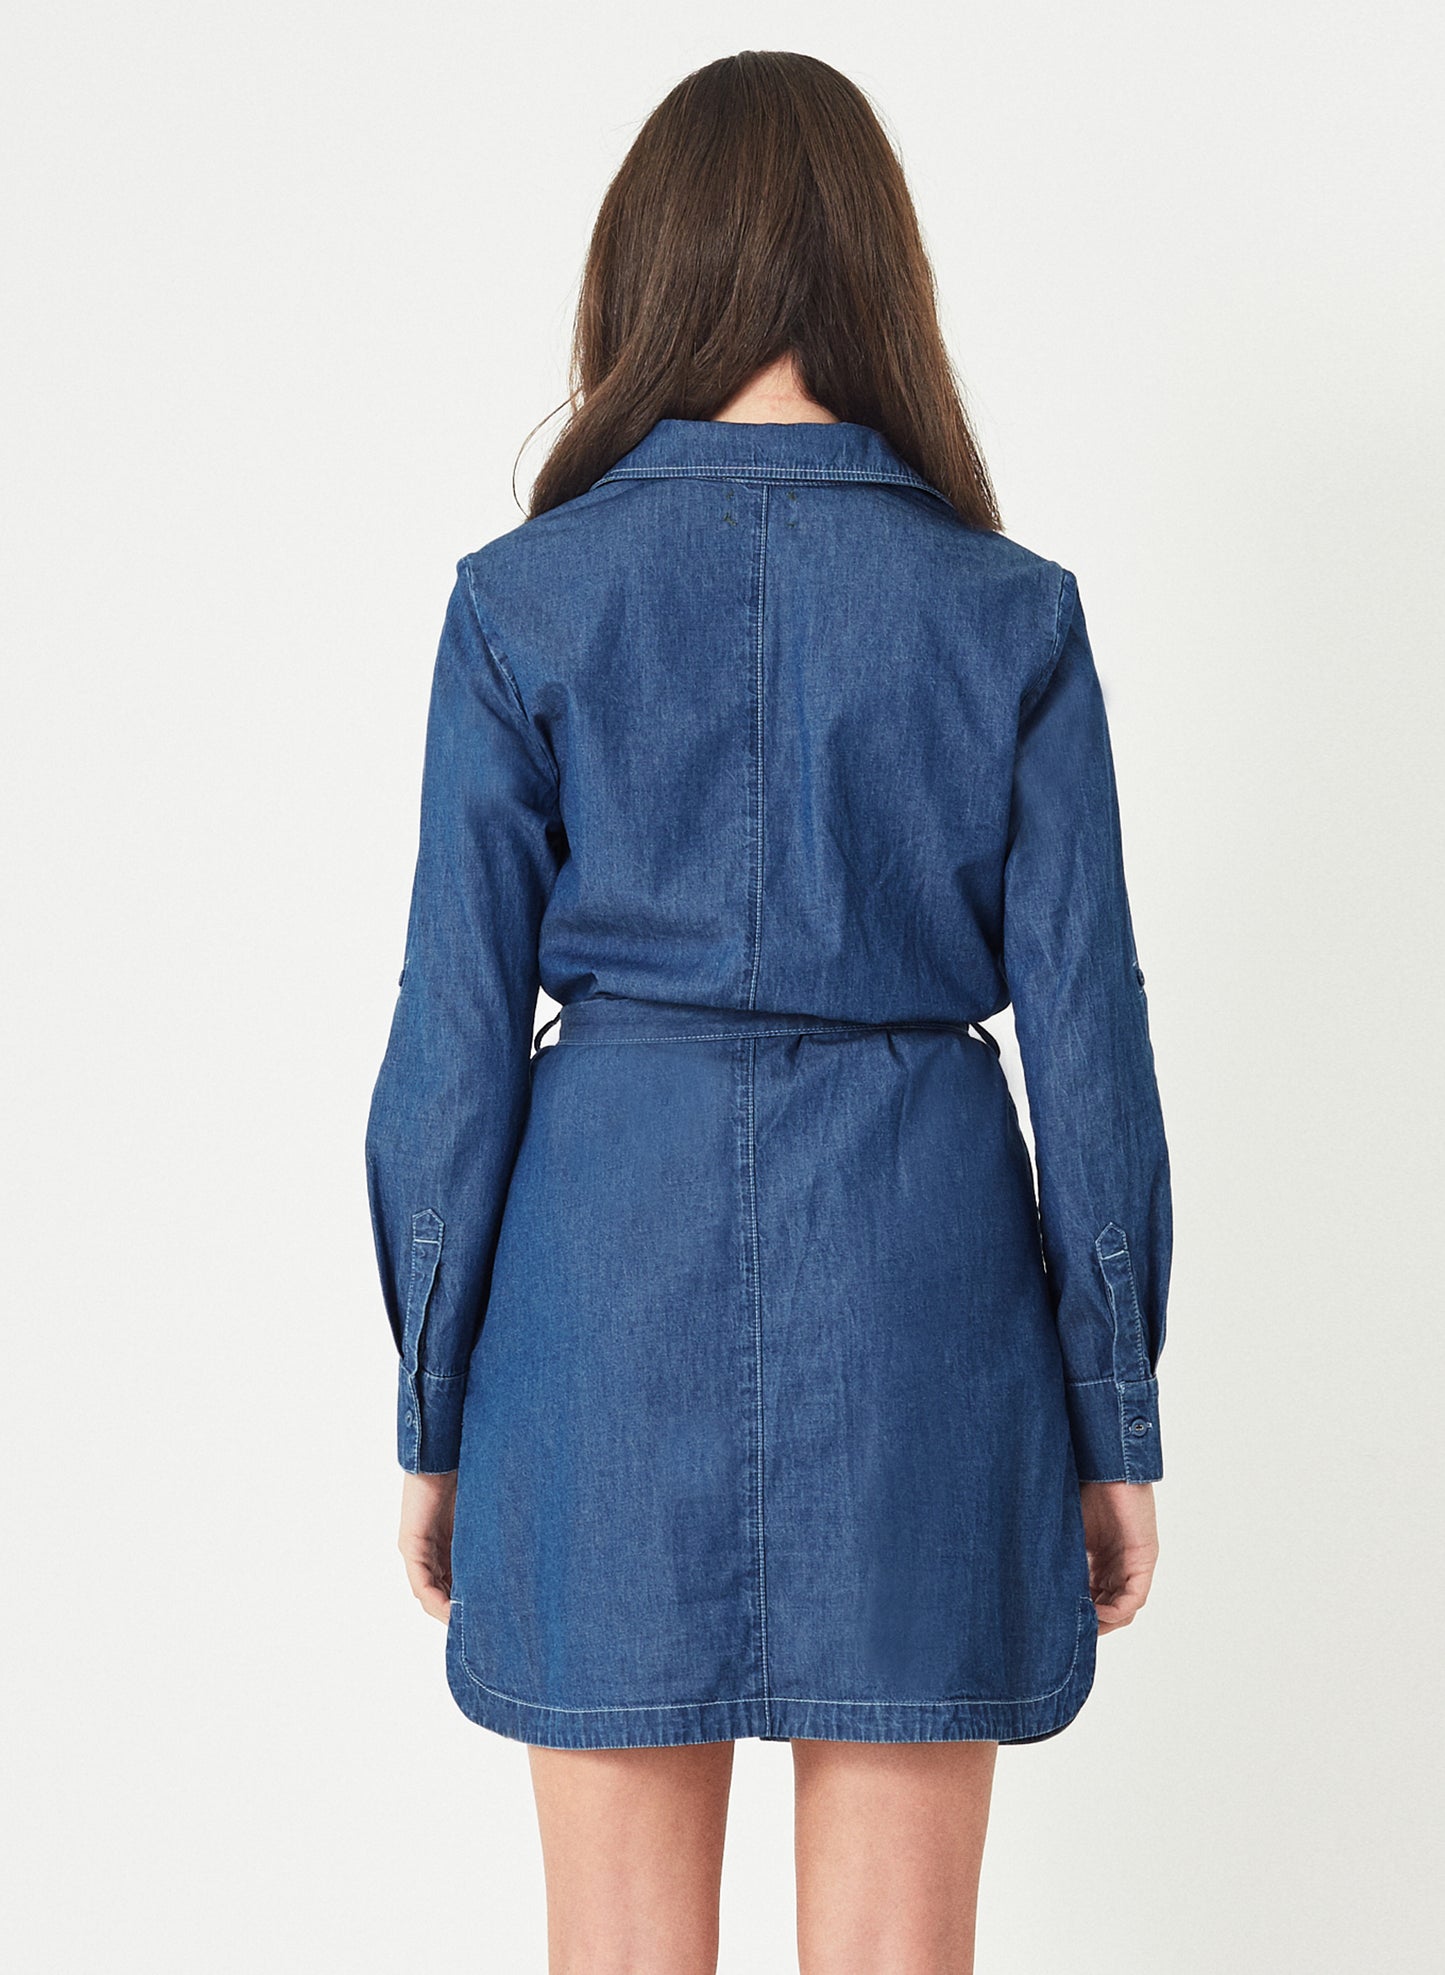 LARA - Denim Jeans Shirt Dress - Mid Blue